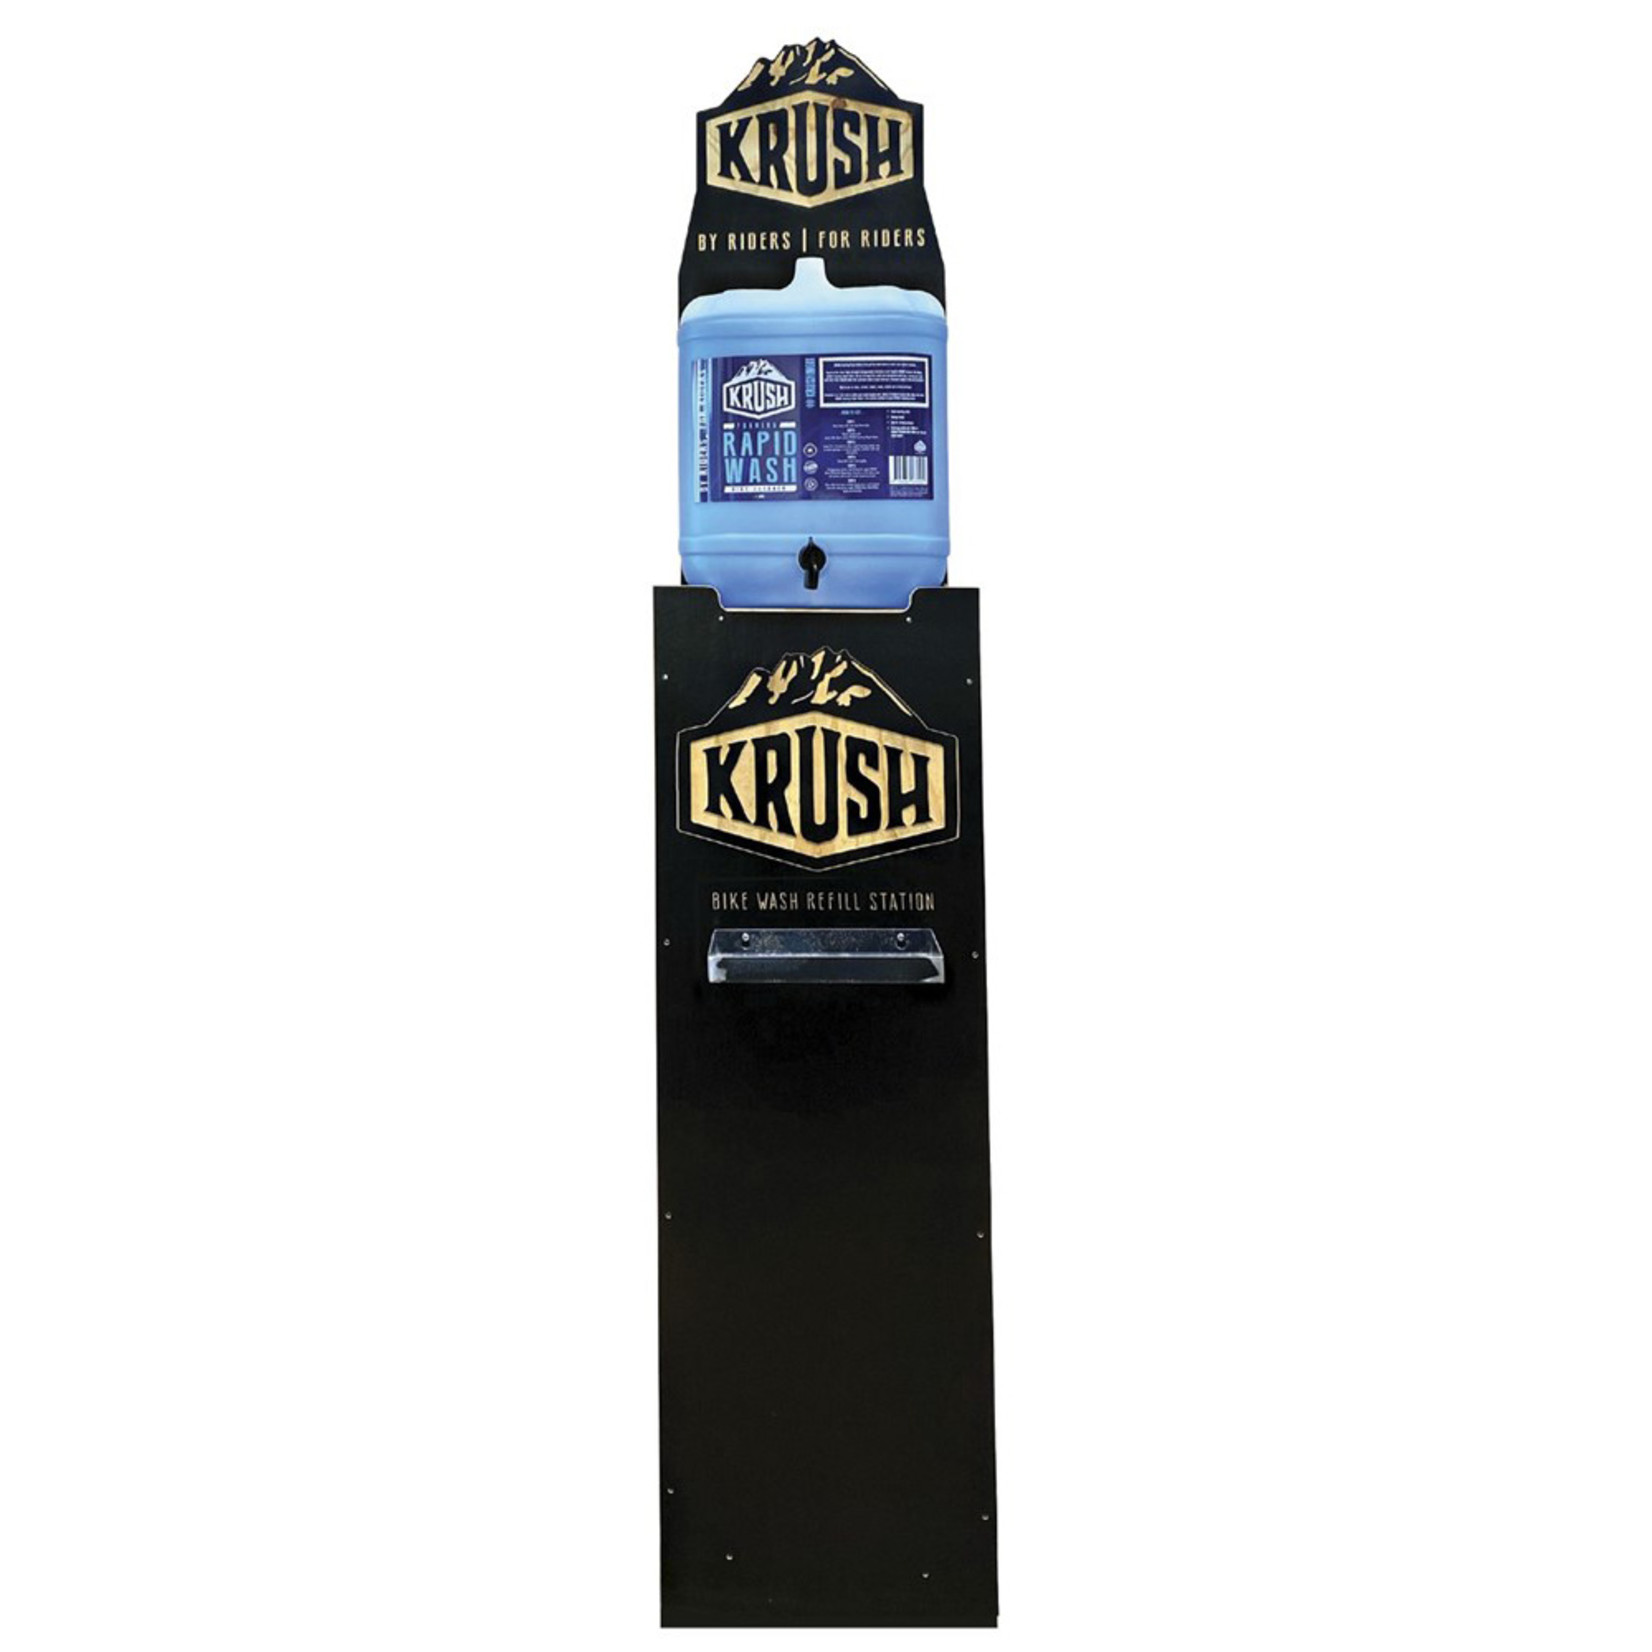 krush Krush Refilling Station Rapid Wash Bottles Instore Stand